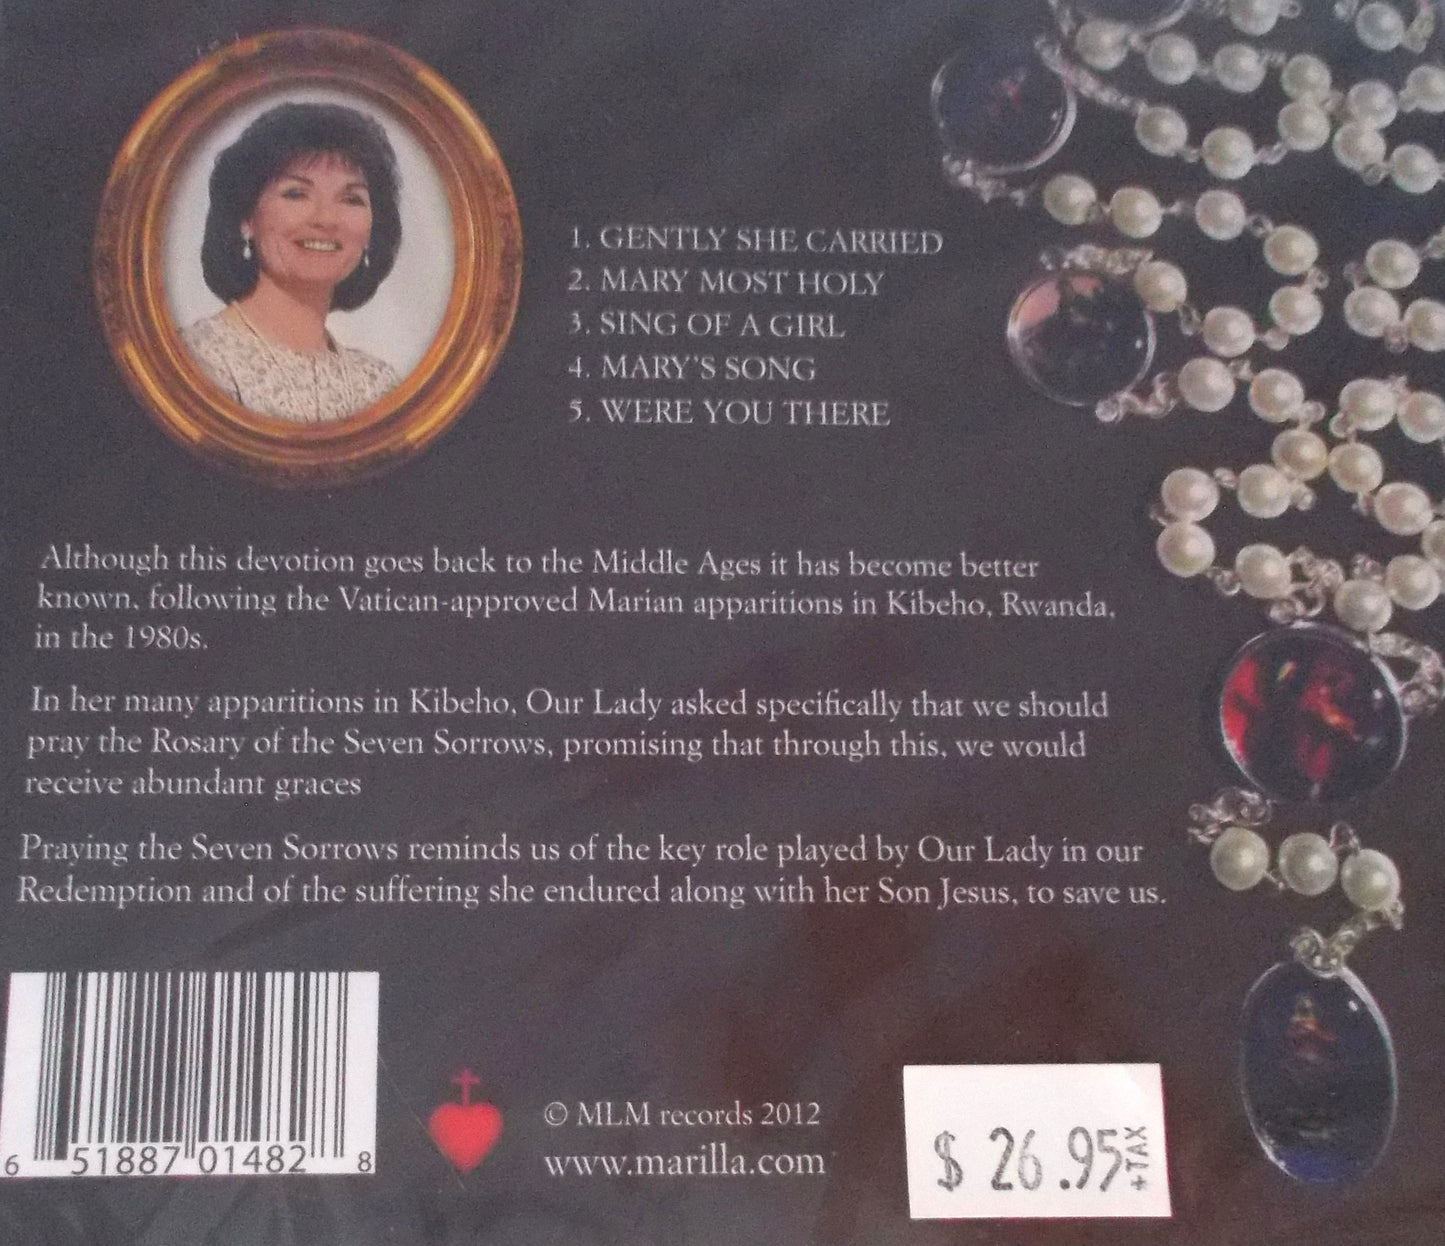 Marilla Ness - The Seven Sorrows Rosary - Music CD